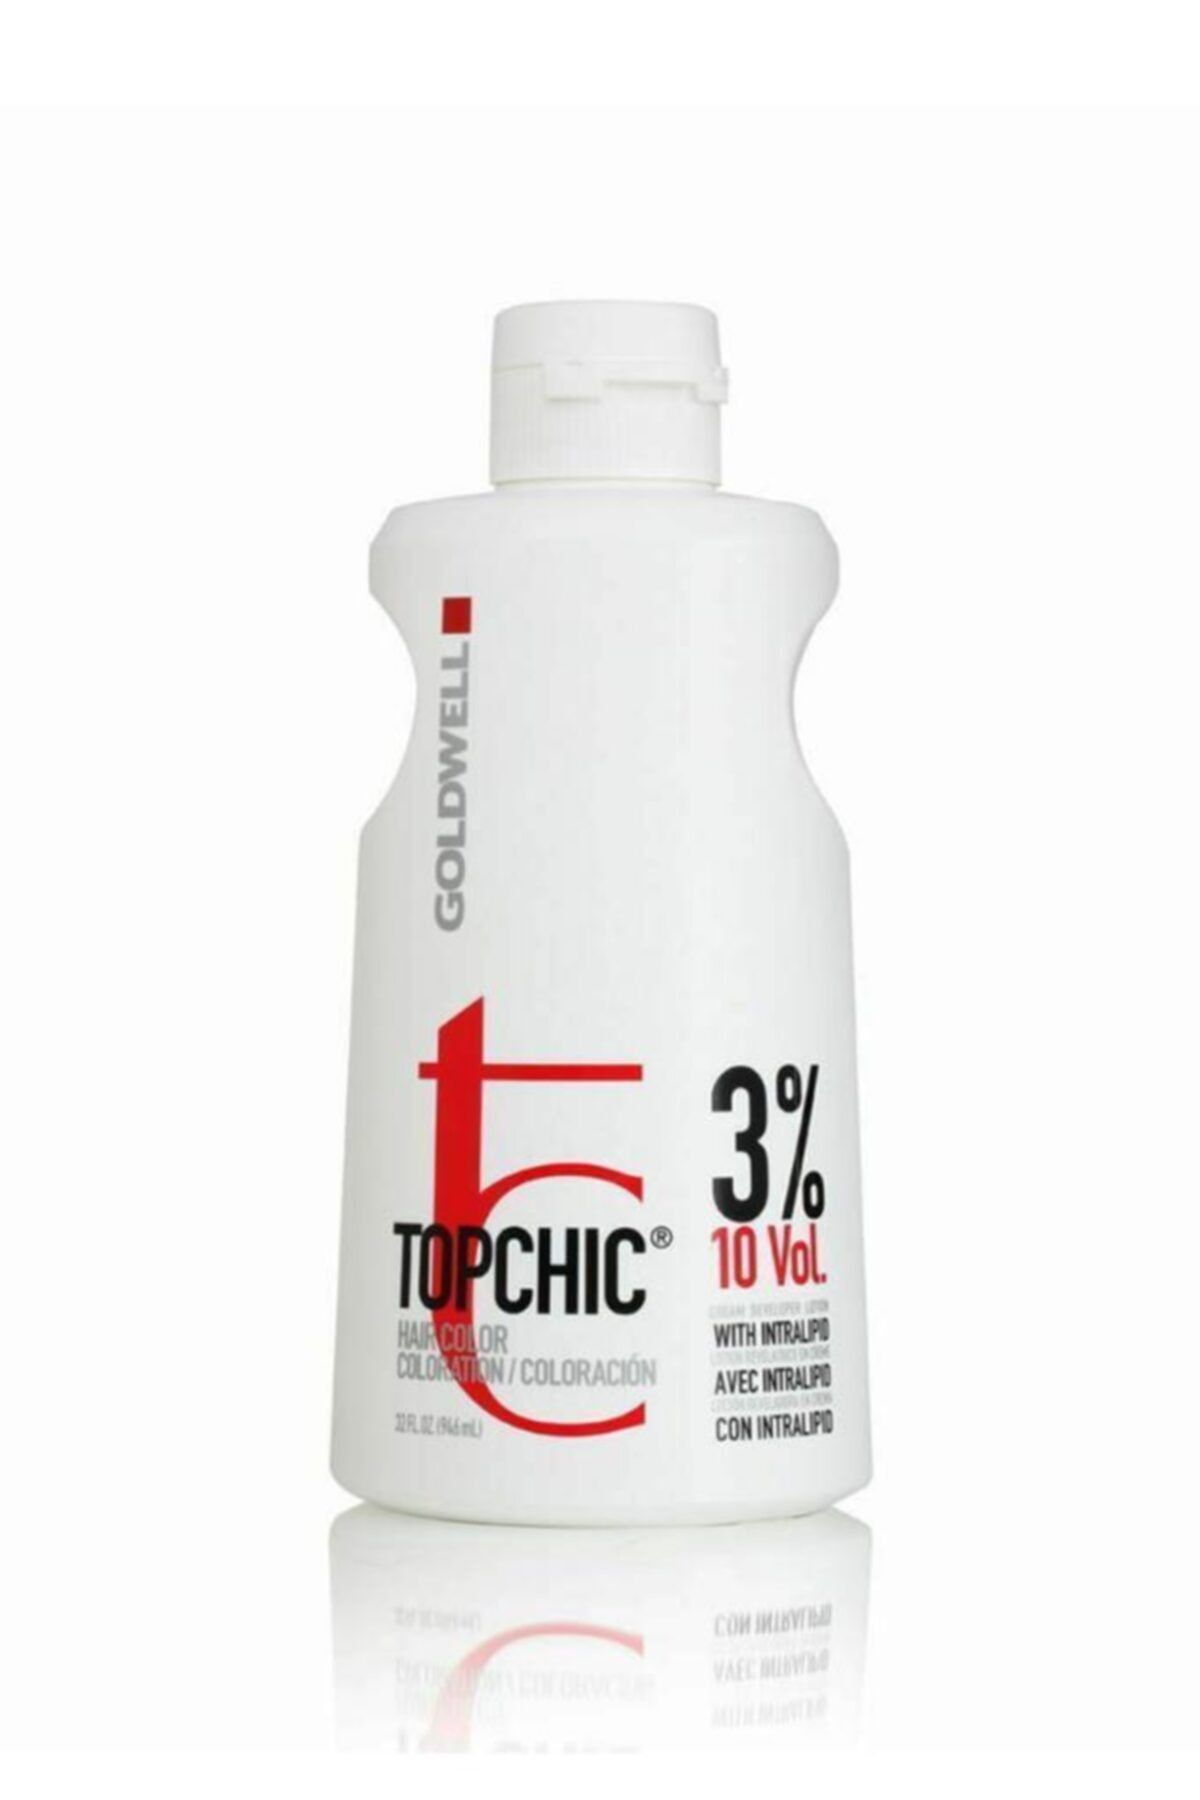 GOLDWELL Topchic Oksidan Krem %3 10 Vol 1000 ml